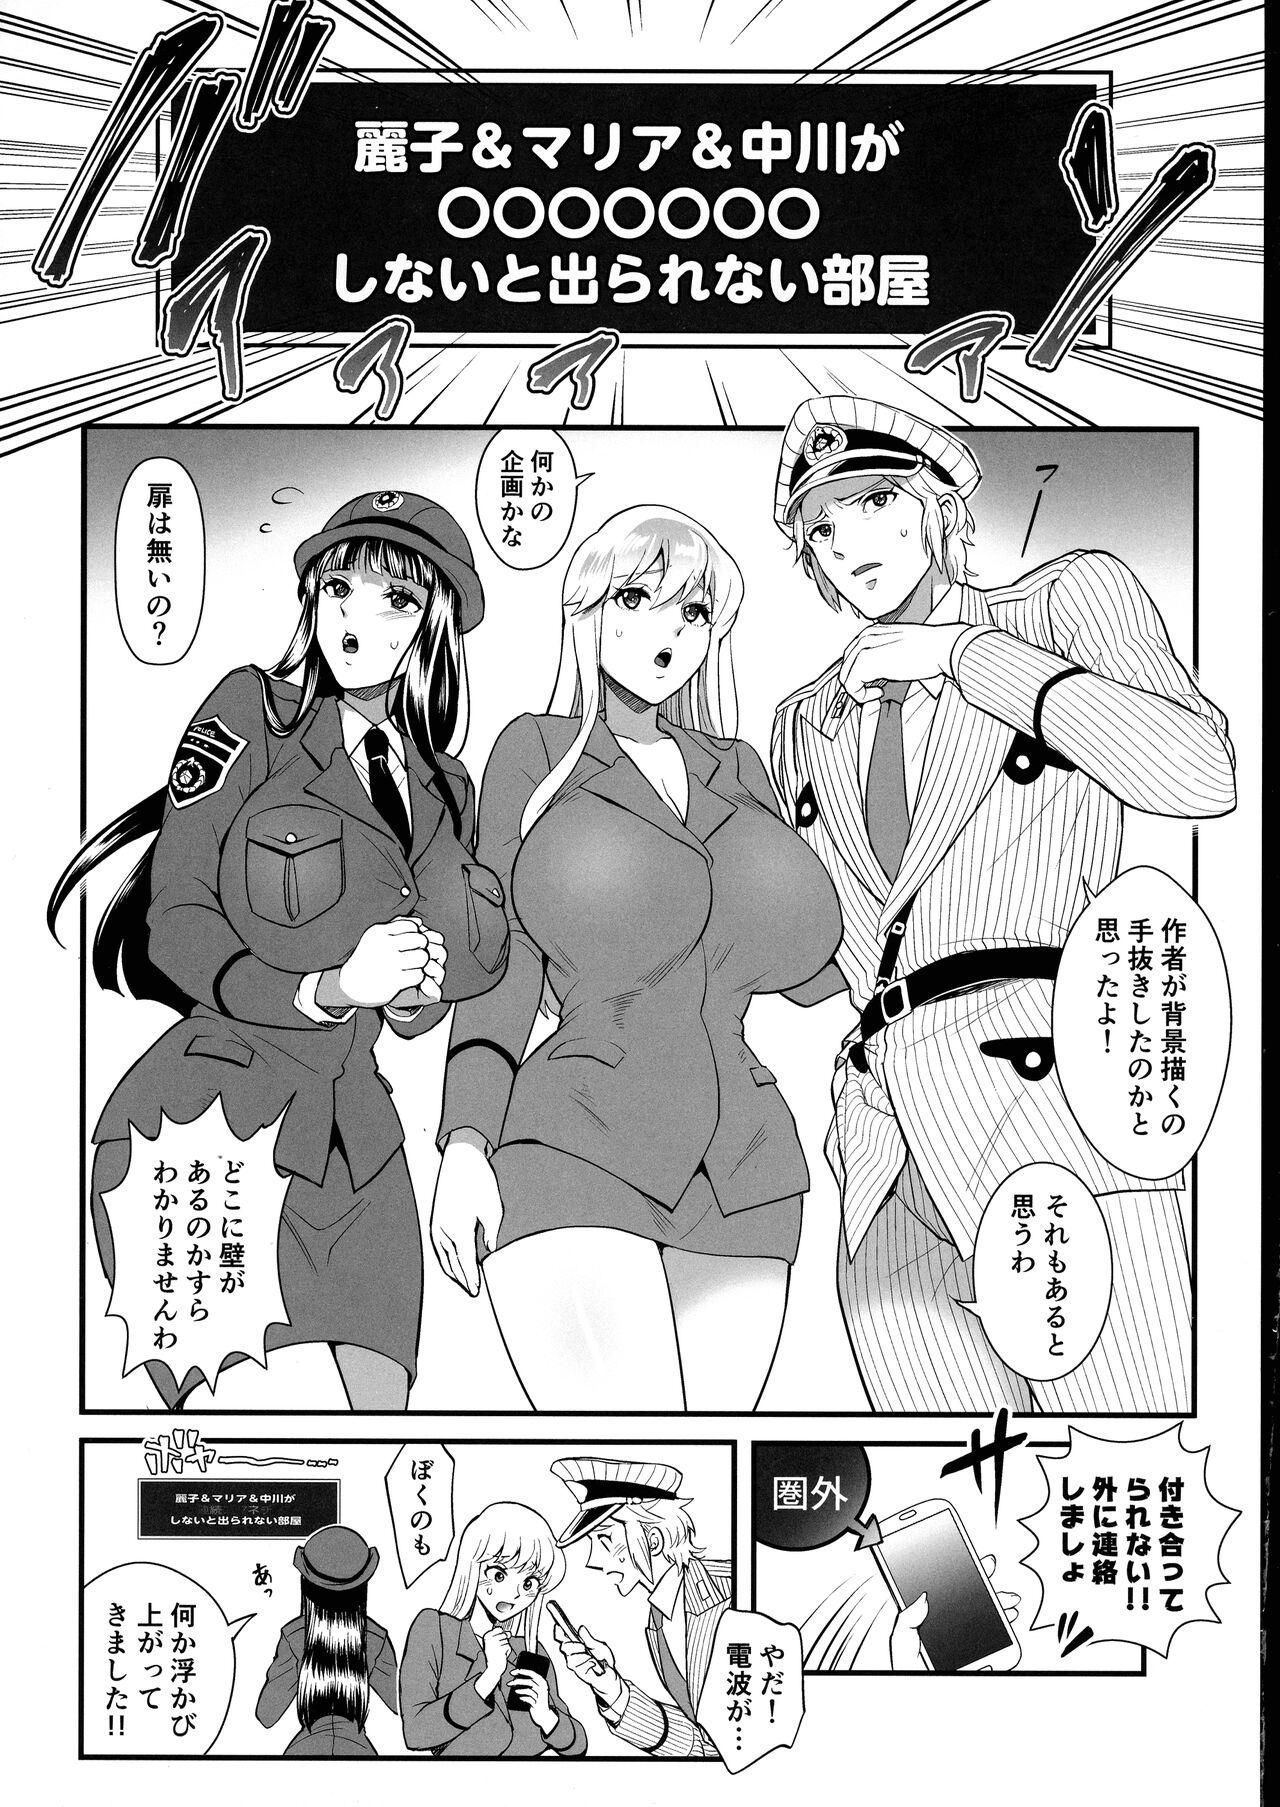 Work Reiko & Maria & Nakagawa ga Ogeretsuna Koto o Shinai to derarenai Heya no Maki - Kochikame Gay Blackhair - Page 4